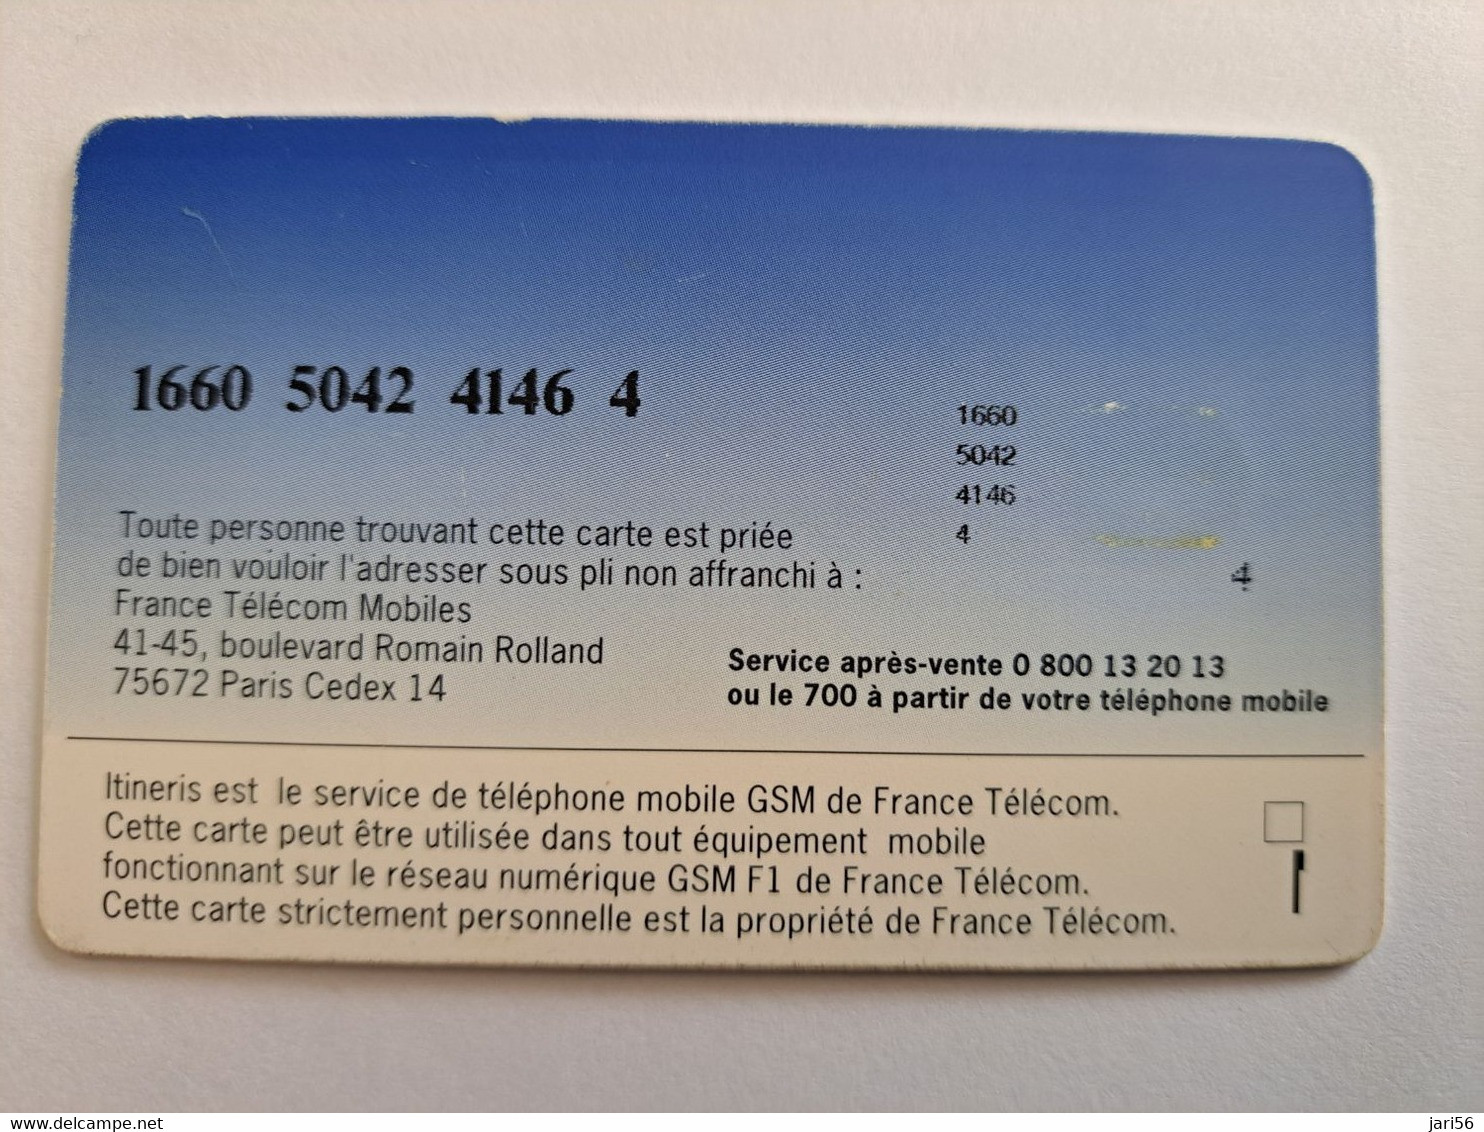 FRANCE/FRANKRIJK   SIM  GSM CARD / ITENERIS  MOBILE   WITH CHIP     ** 10487 ** - Mobicartes: Móviles/SIM)